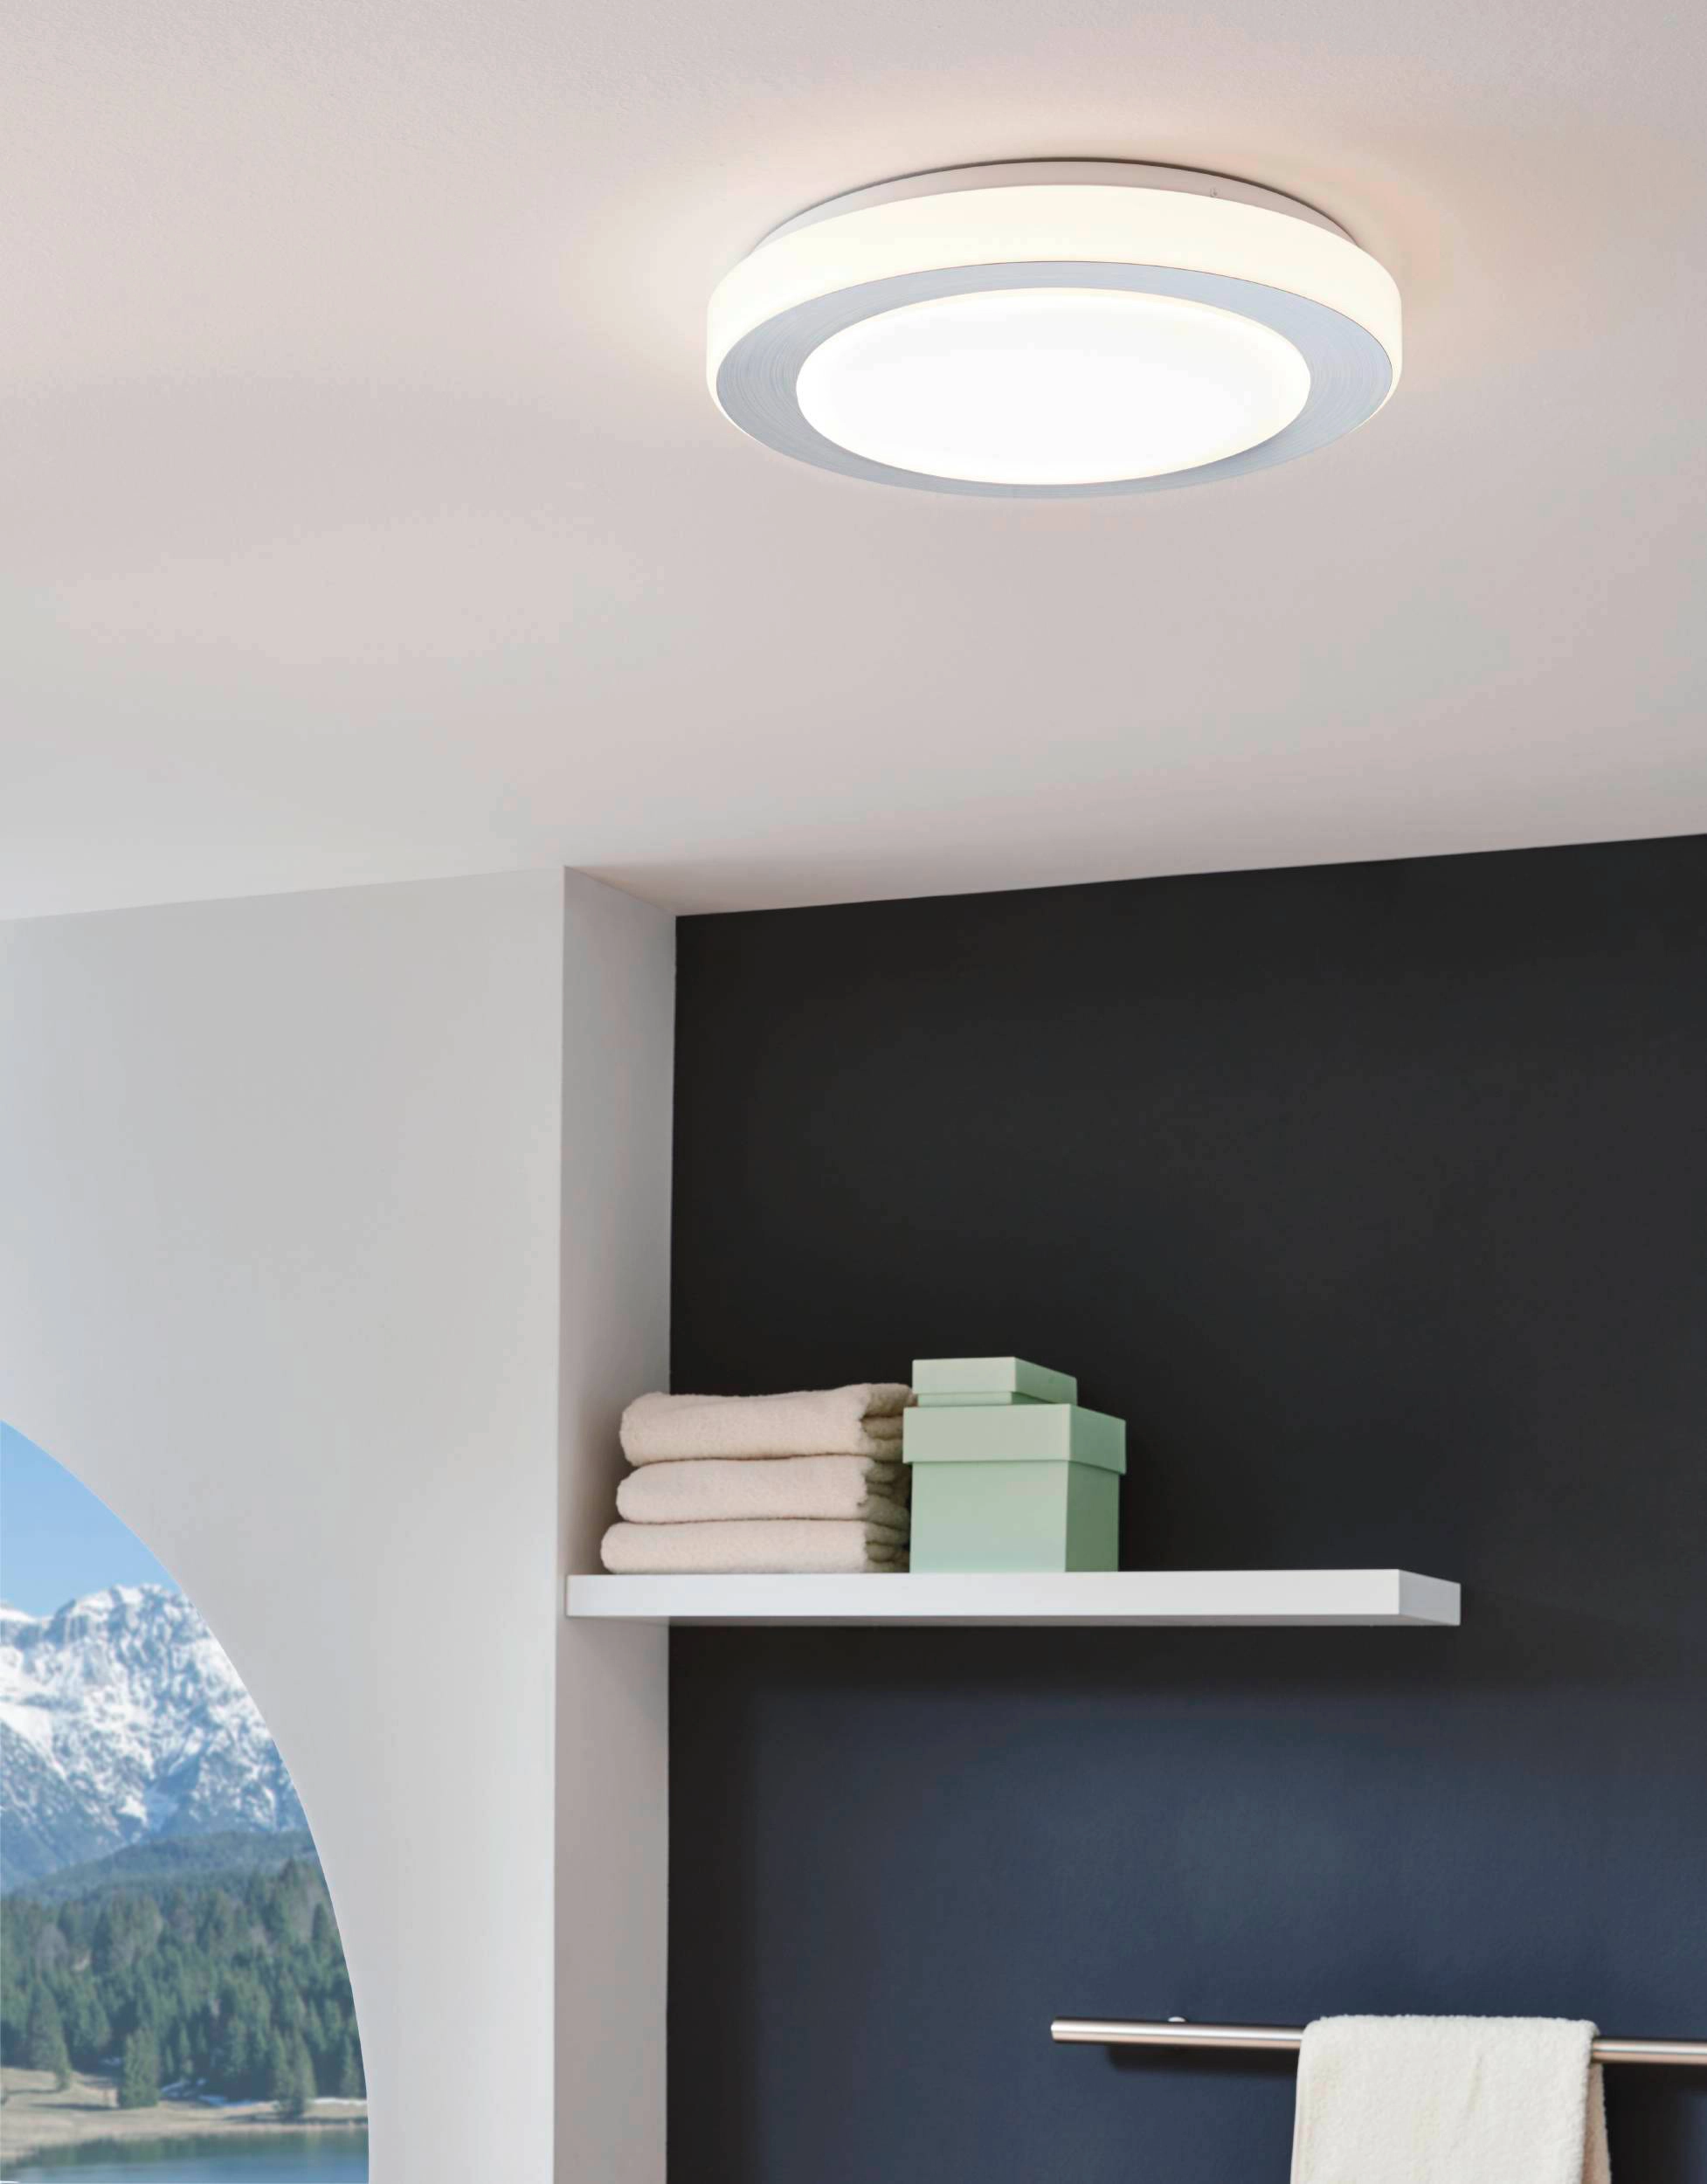 Eglo LED Deckenleuchte Carpi 3-flammig Alu Weiß 3,6 W kaufen bei OBI | Deckenlampen